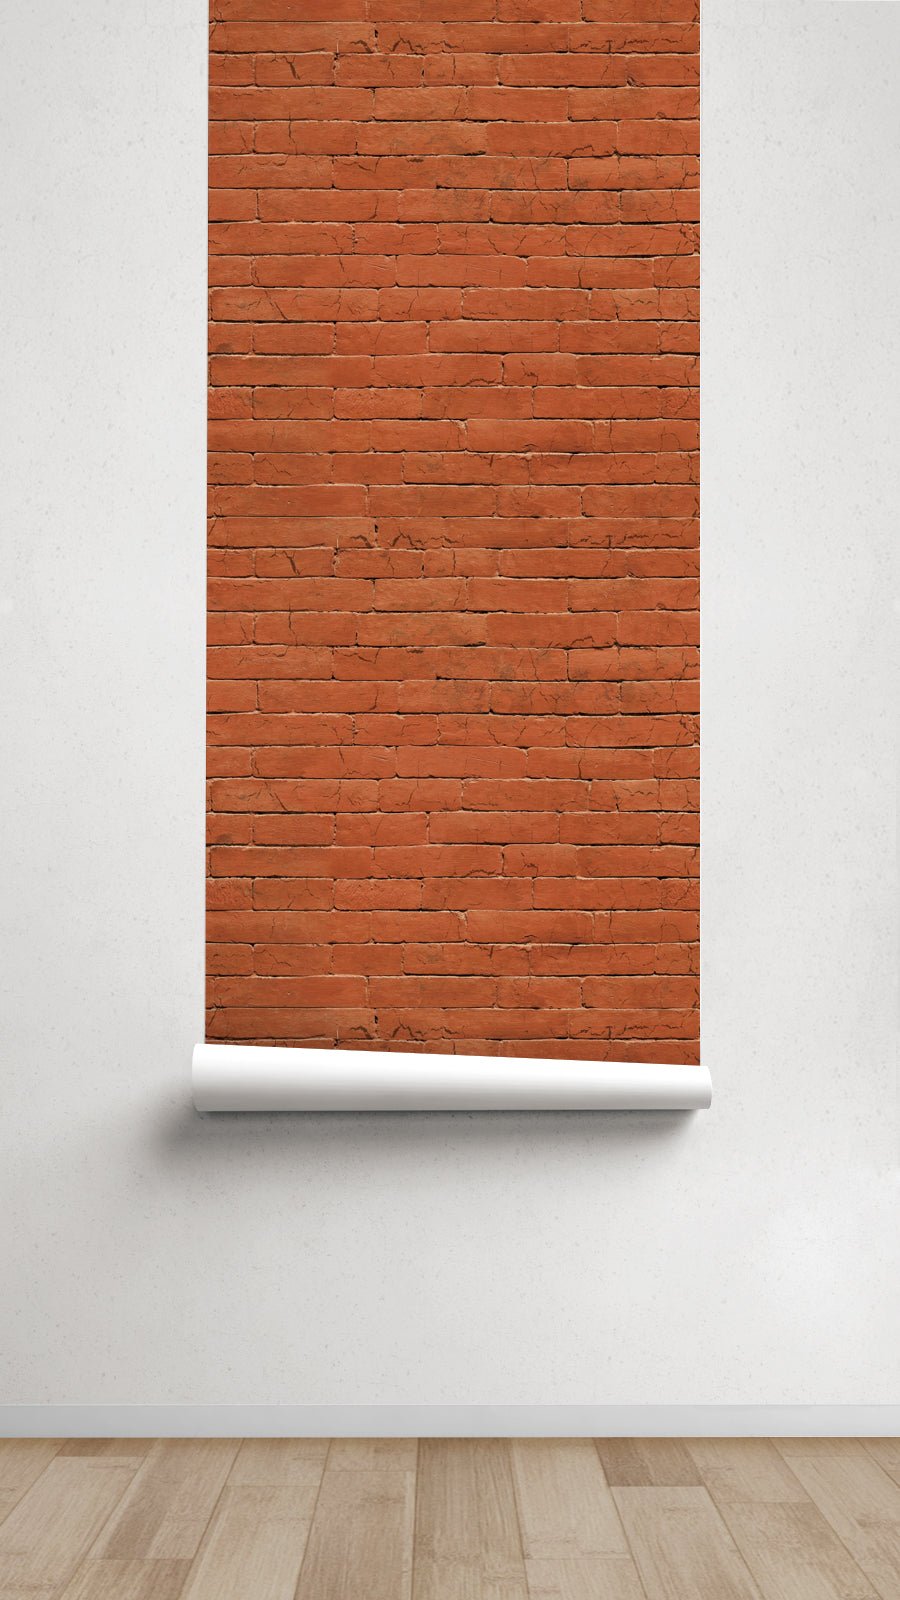 Papel pintado Red brick - sokios-PAPEL PINTADO200618S7540